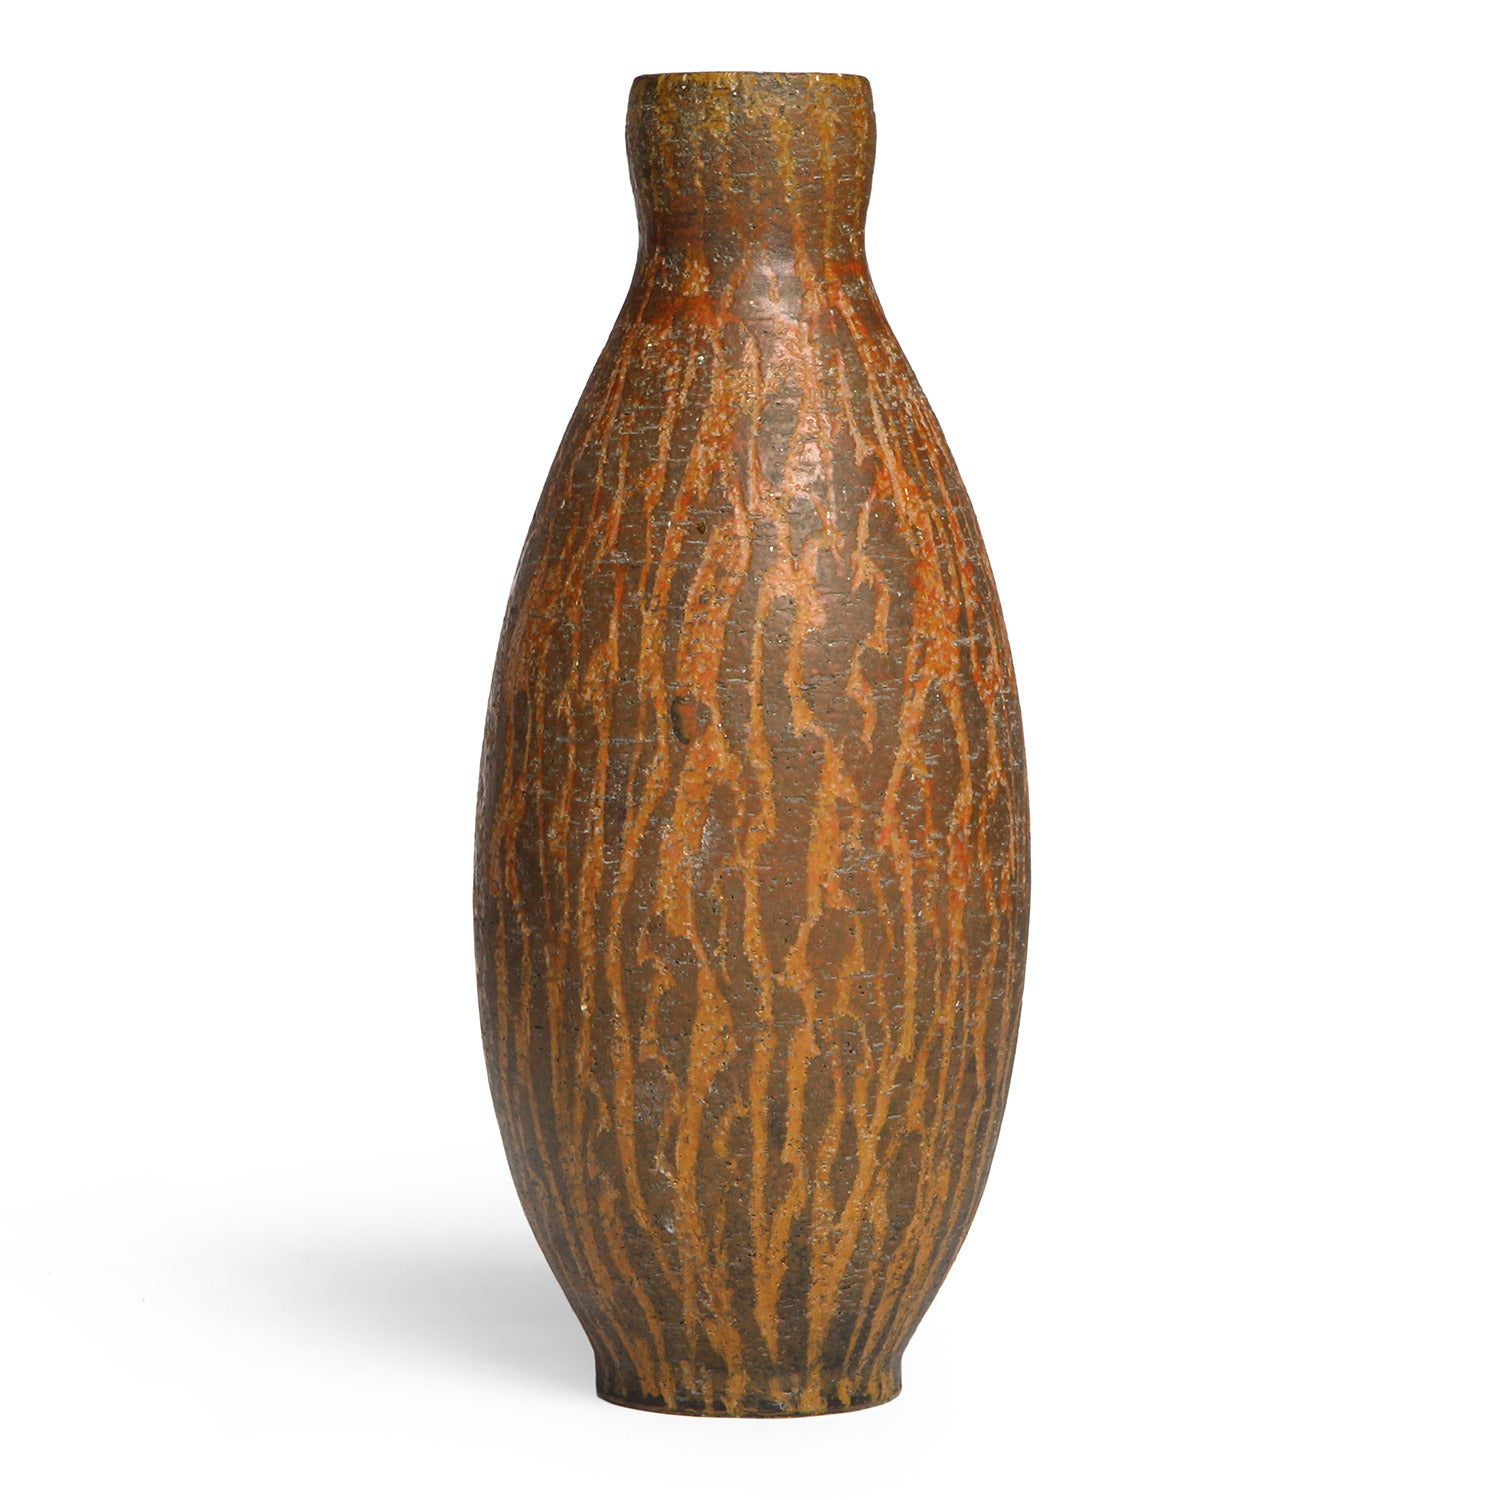 Incised Italian Ceramic Vase